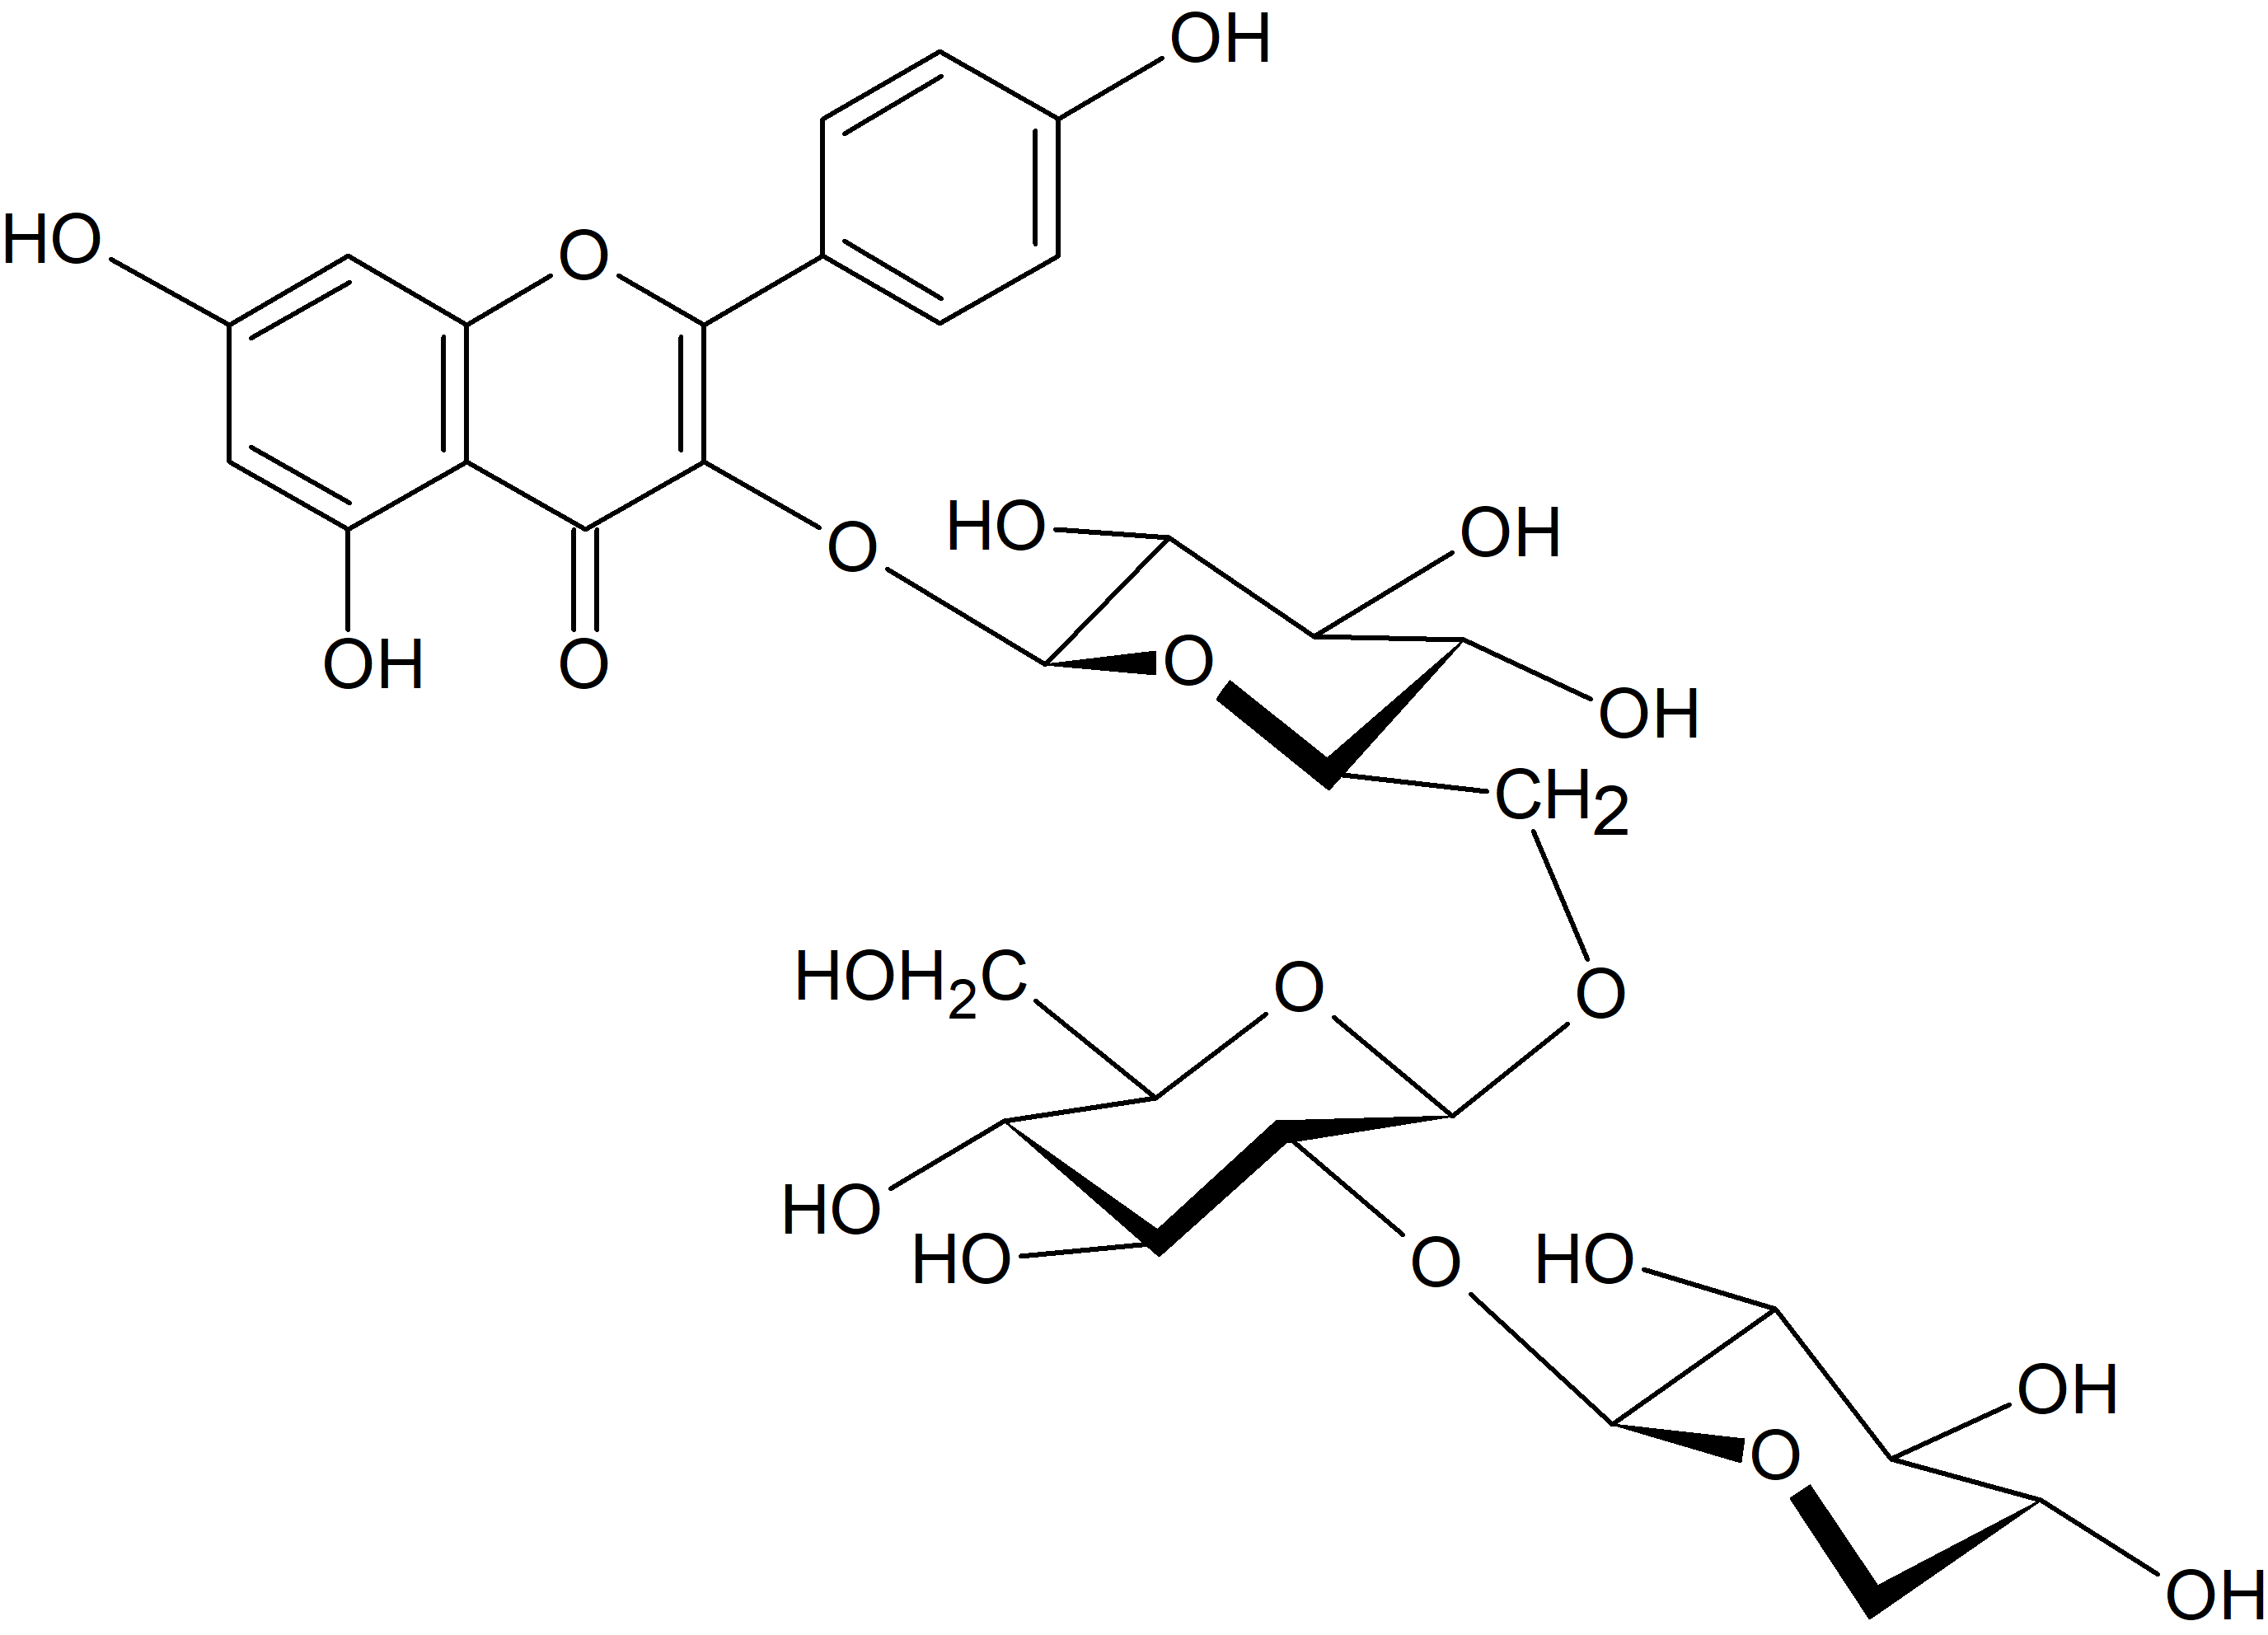 Kaempferol 3-O-xylosyl-(1→2)-glucosyl-(1→6)-glucoside